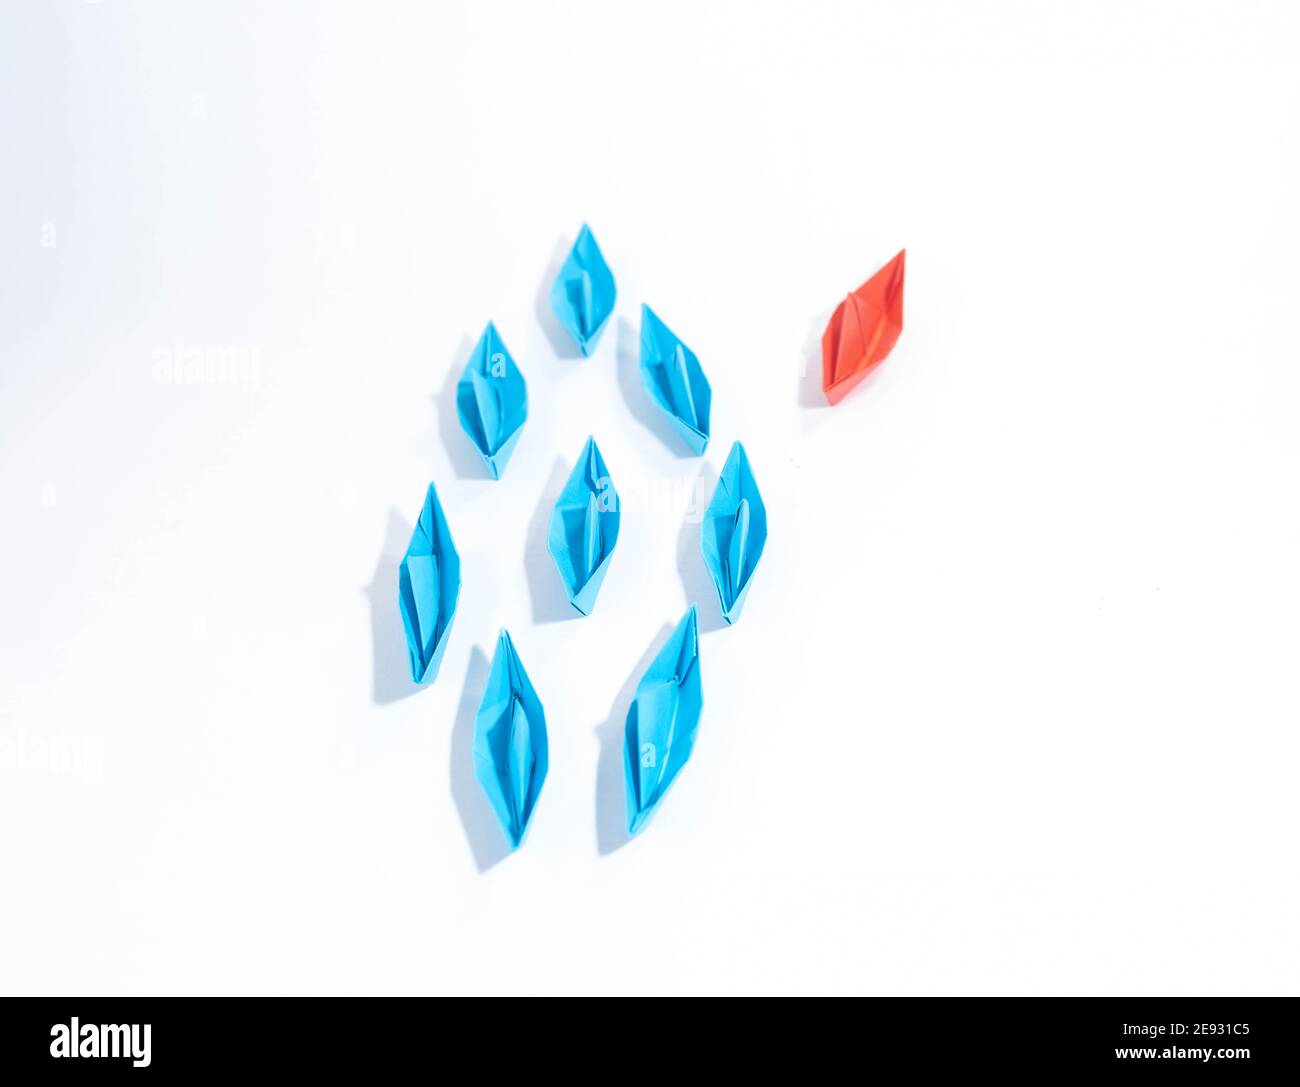 Gruppe von blauen Papierbooten in eine Richtung und ein rotes Papierboot, das unterschiedlich auf weißem Hintergrund zeigt. Business für innovatives Lösungskonzept. Stockfoto